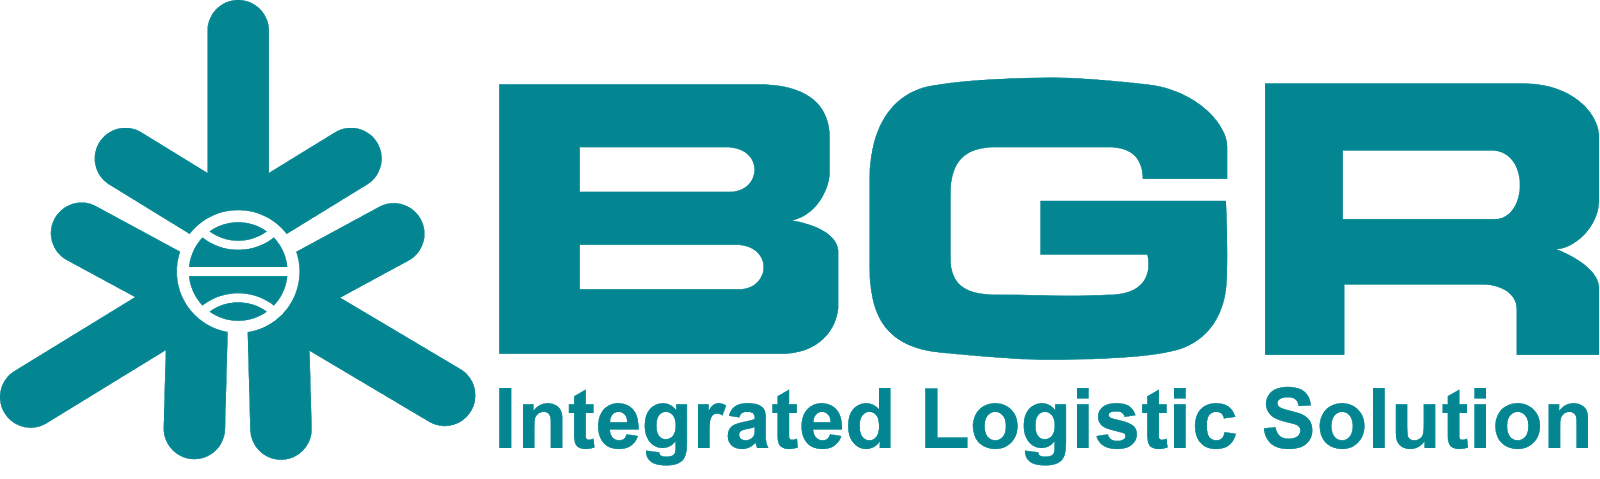 BGR Logo - Logo Bhanda Ghara Reksa (BGR)